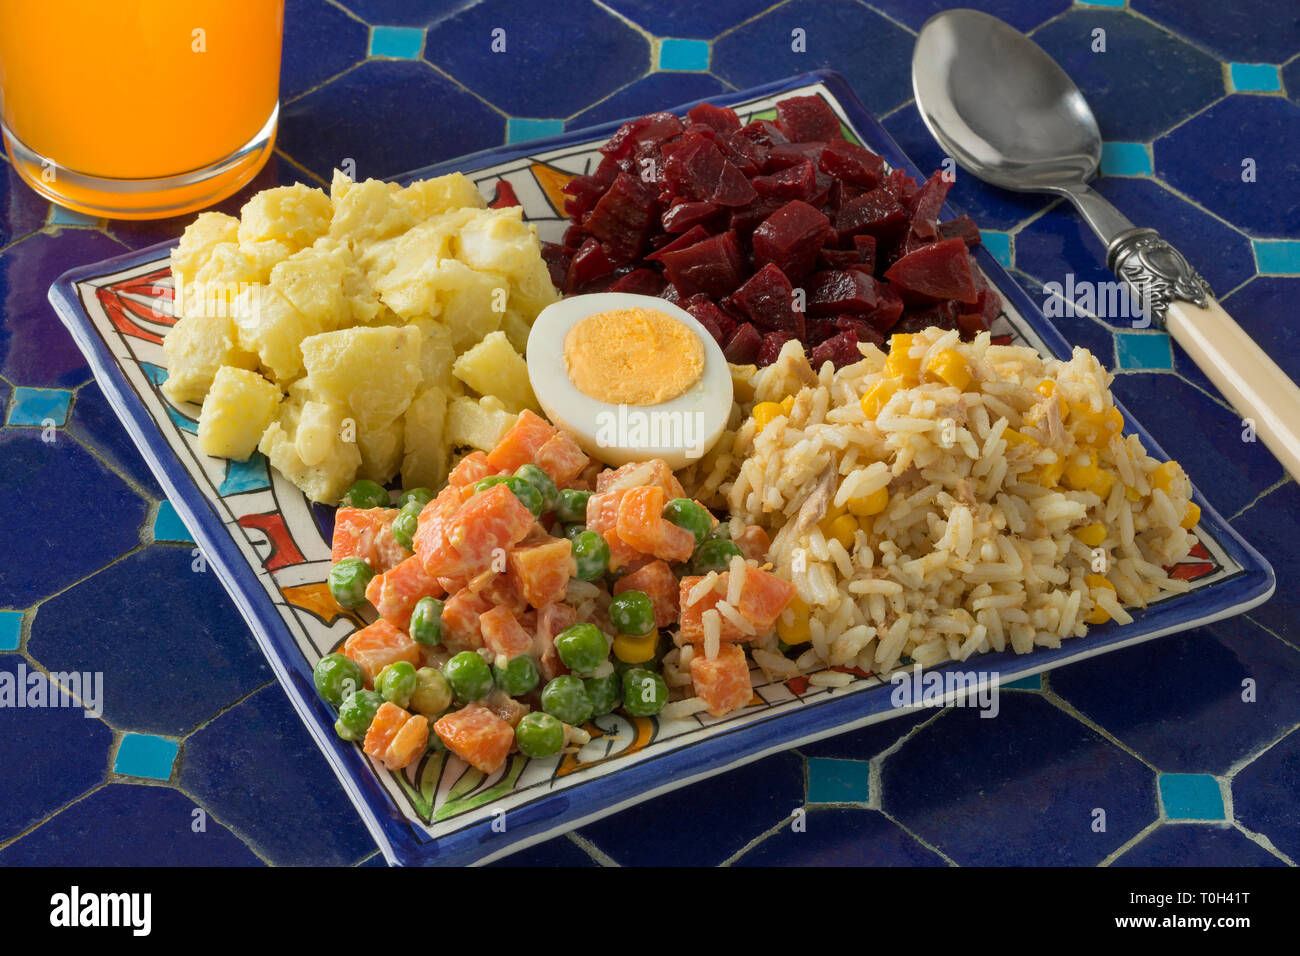 Gesund essen mit traditionellen marokkanischen gemischter Salat auf einer Terrasse Tisch im Freien Stockfoto